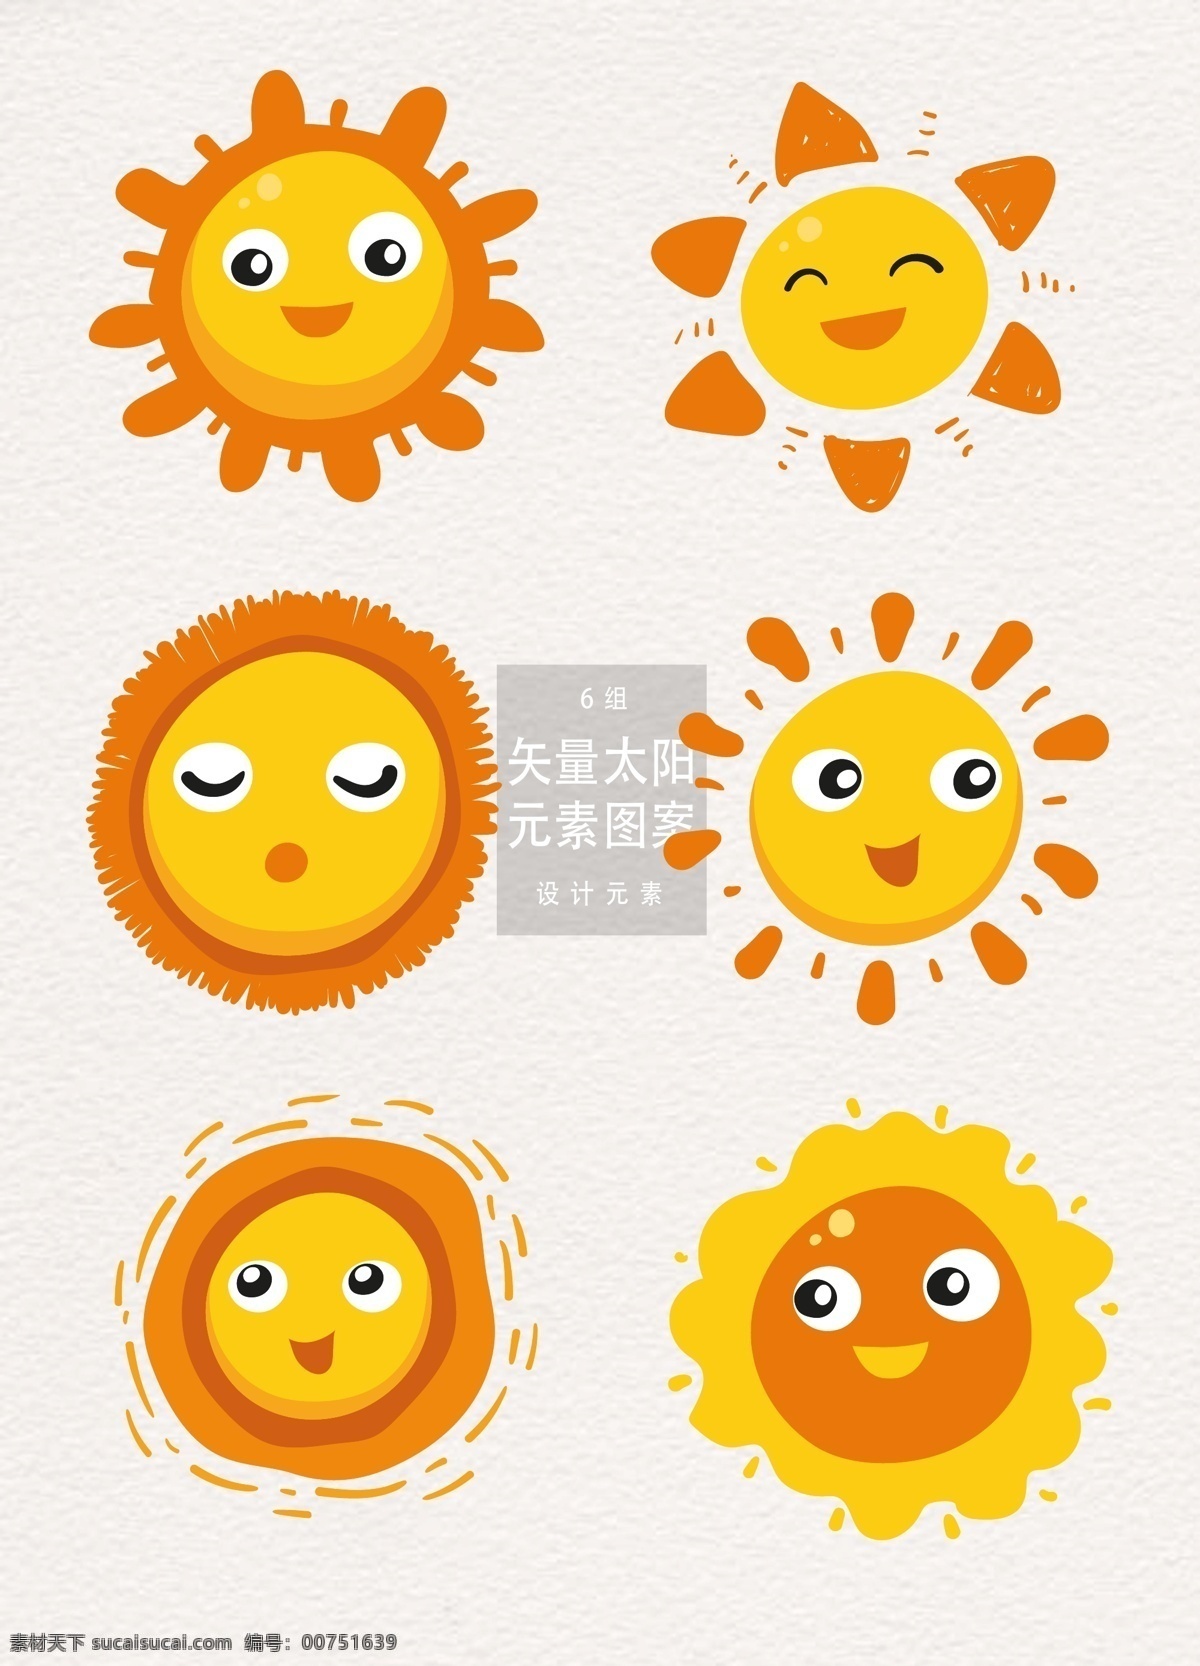 可爱 创意 卡通 太阳 六一儿童节 元素 矢量 夏季 夏天 阳光